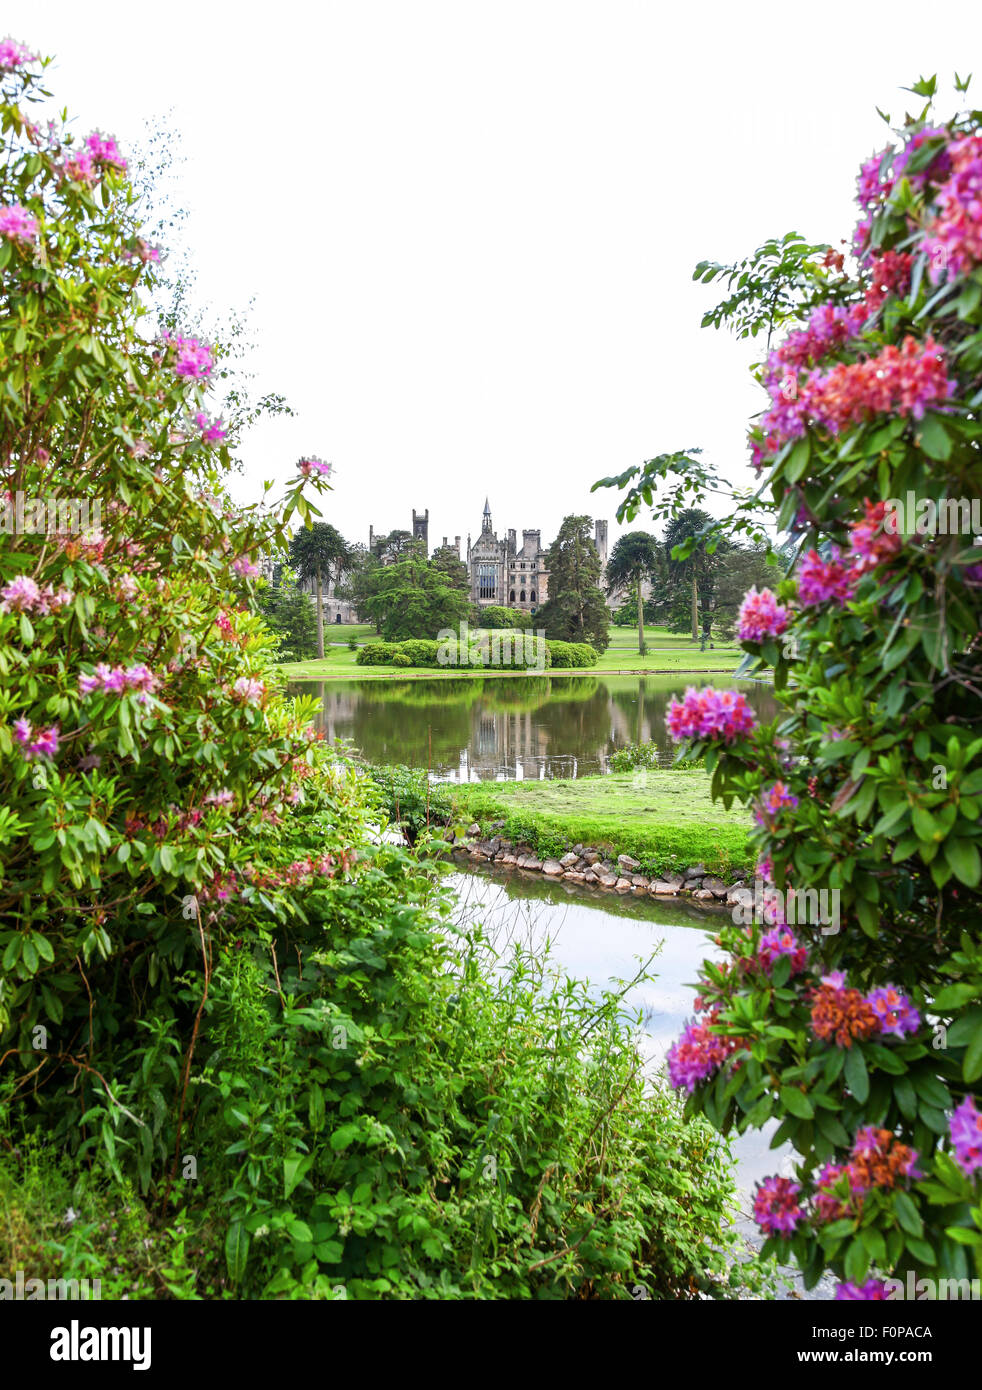 L'abandon d'Alton Towers maison sur le thème des jardins du parc immobilier Staffordshire England UK vue à travers les rhododendrons Banque D'Images